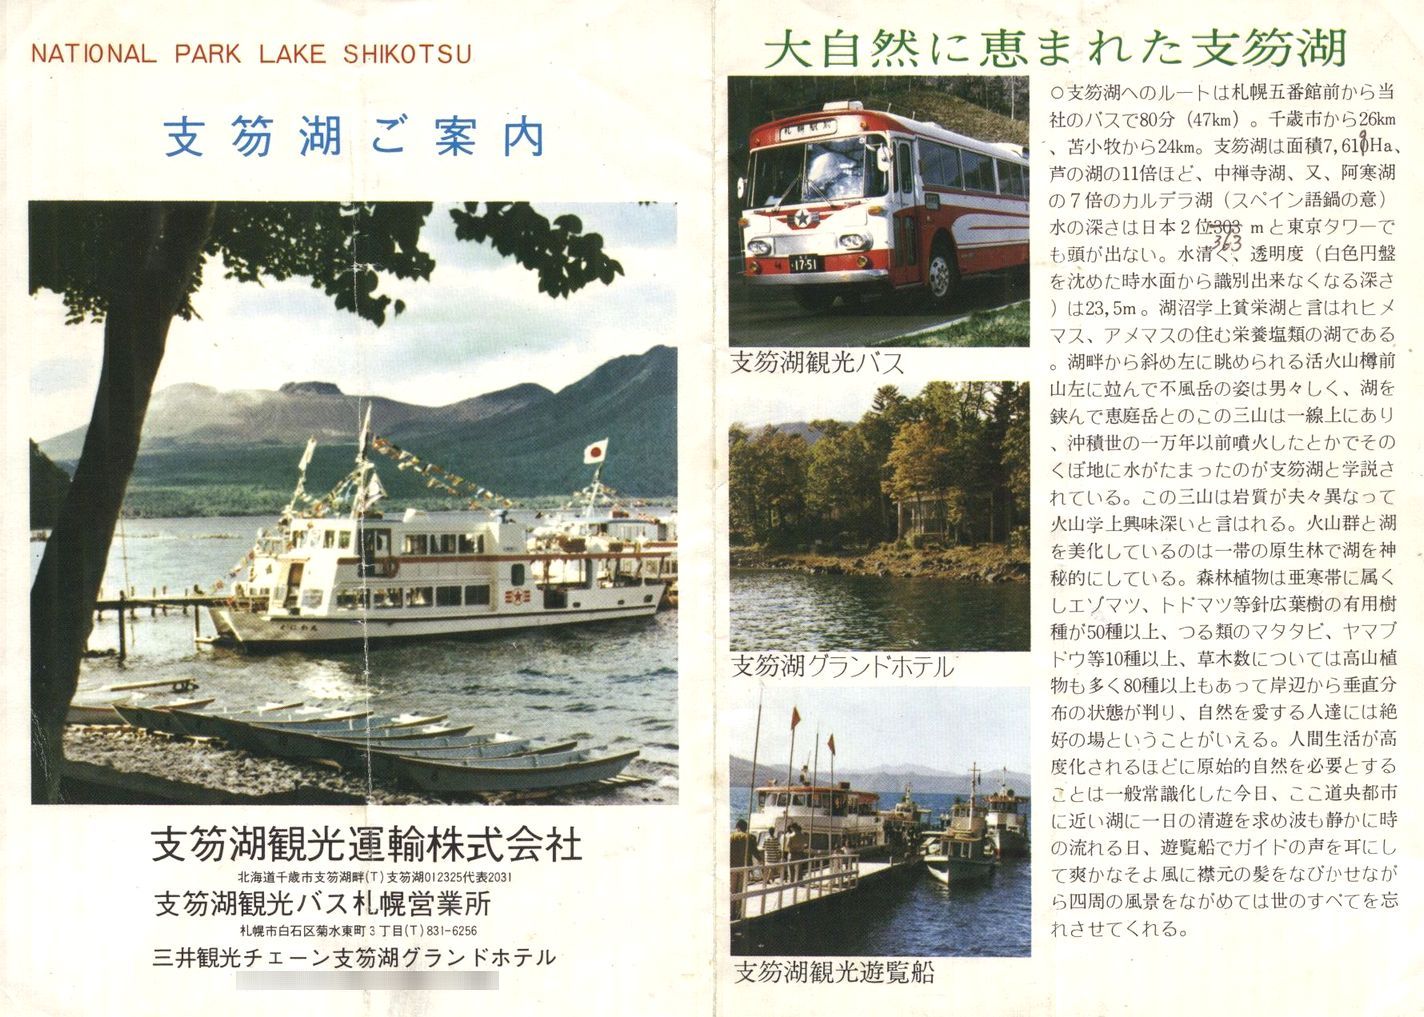 1974-05-01現在_支笏湖観光運輸_「支笏湖ご案内」(時刻表)表面